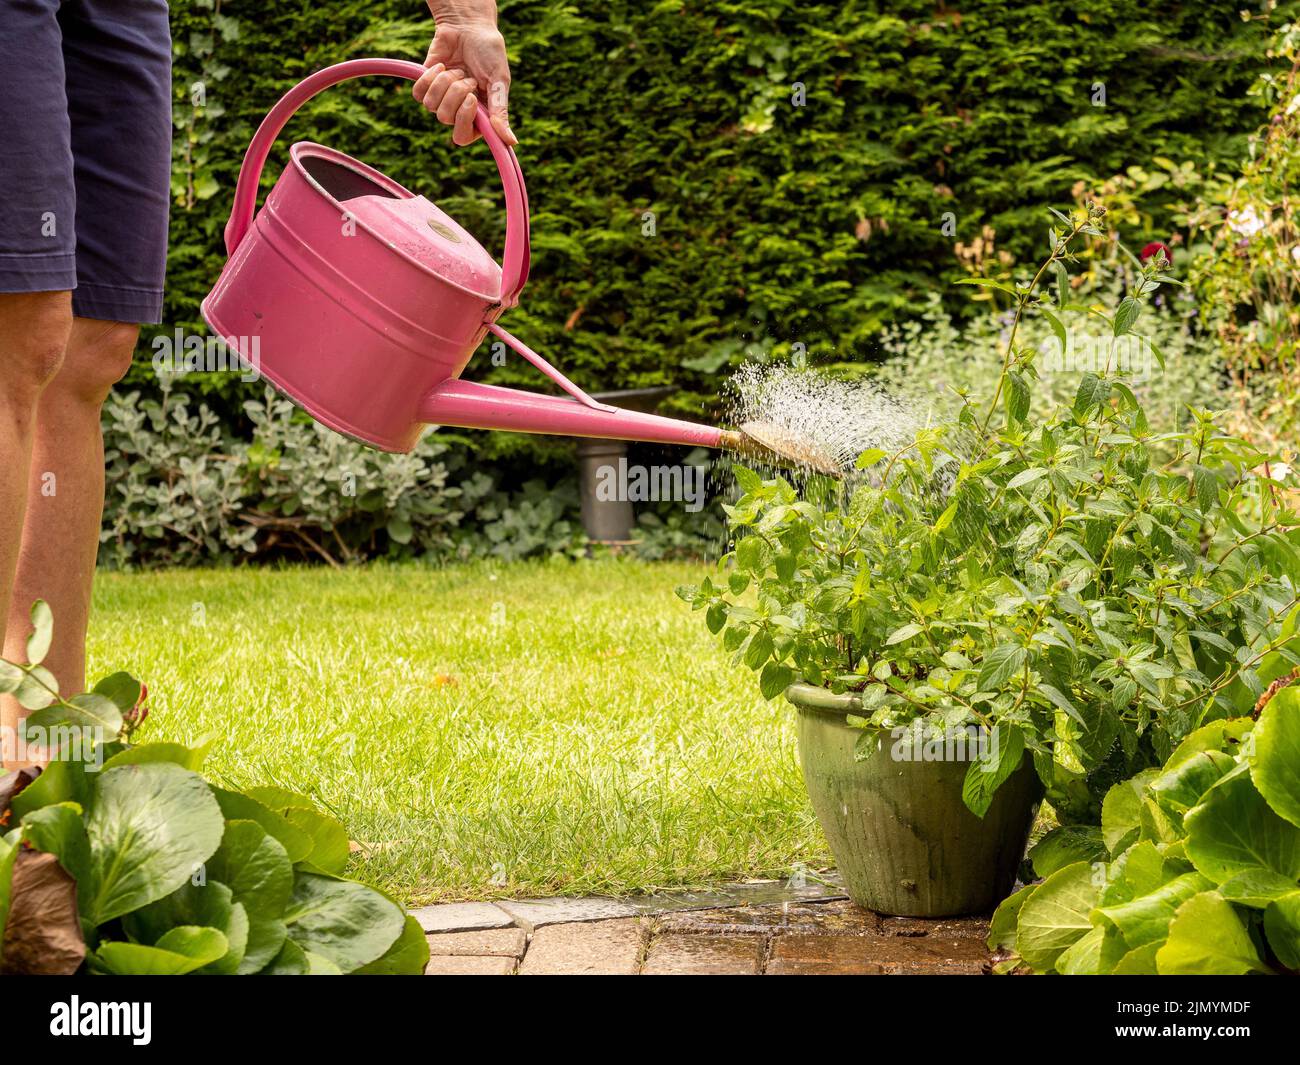 Maceta de riego en patioUnidentificable caucasian adult regar una maceta de planta en un patio con una lata de riego de metal rosa. Foto de stock